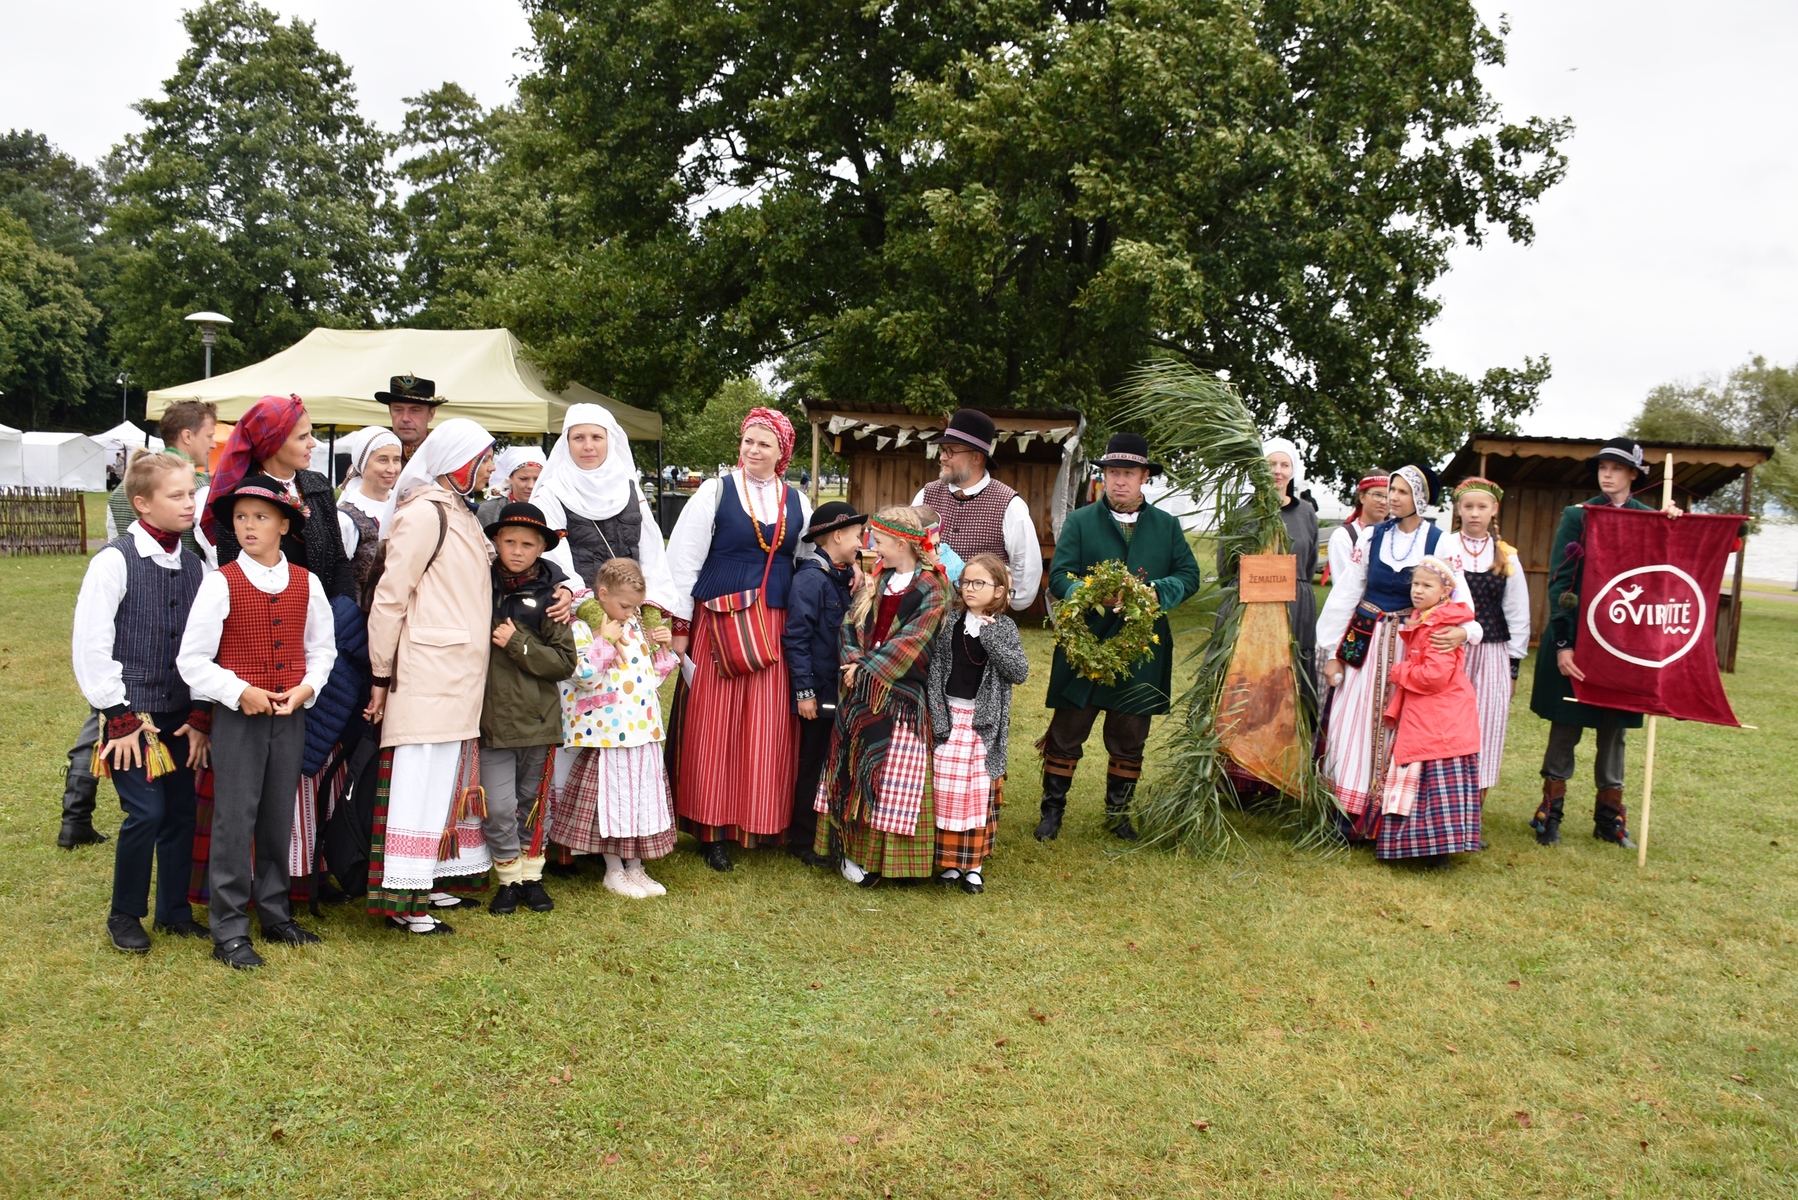  Vasara Juodkrantėje palydėta folkloro švente „Pūsk, vėjuži!“ | Rengėjų nuotr.